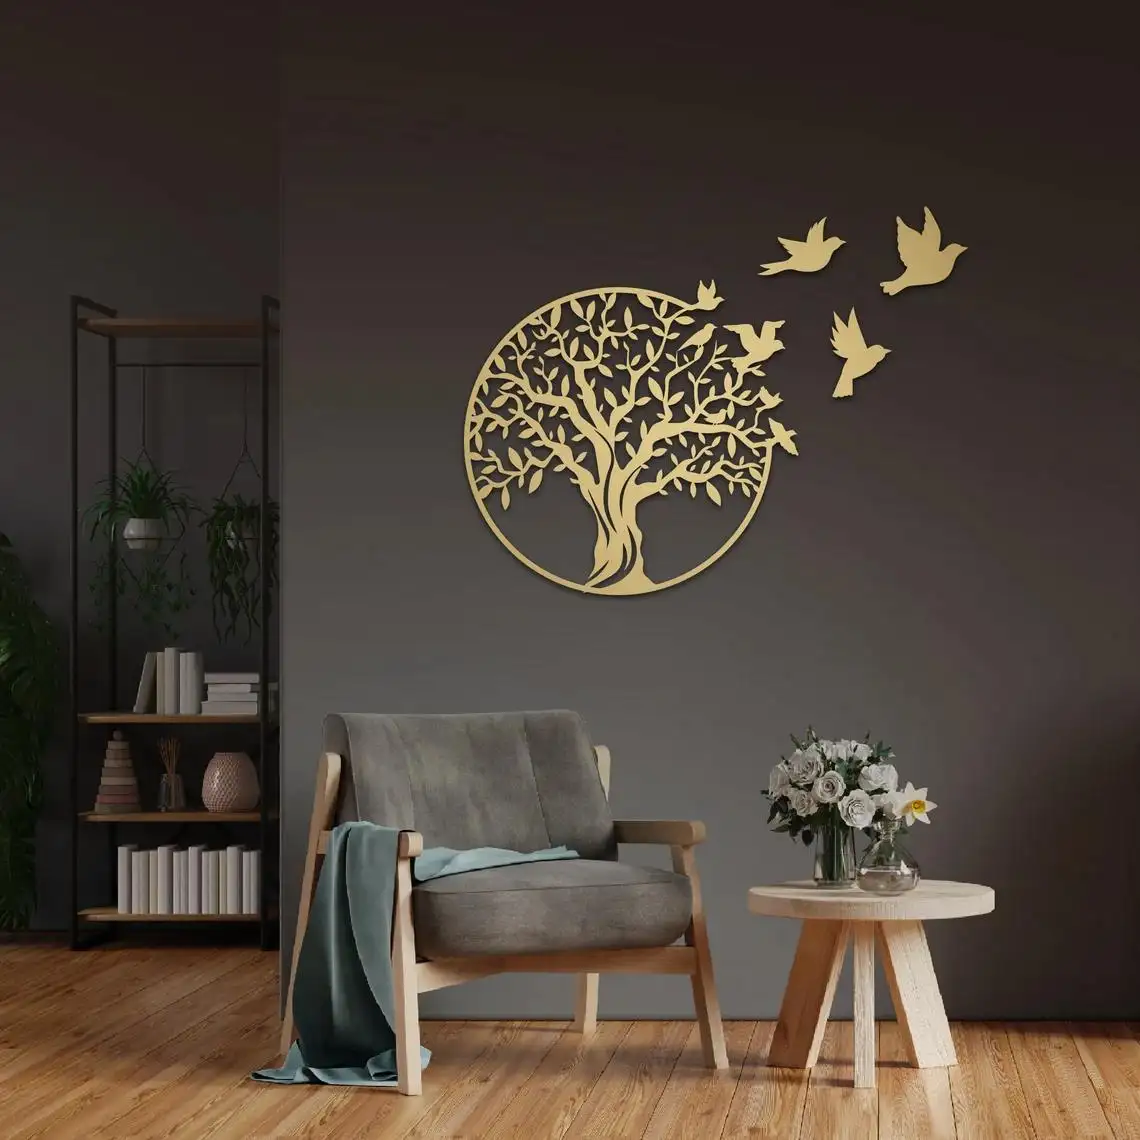 Décoration personnalisée YJL facile à accrocher arbre généalogique en métal robuste décoration murale de salon arbre oiseau art mural pour la décoration de la maison